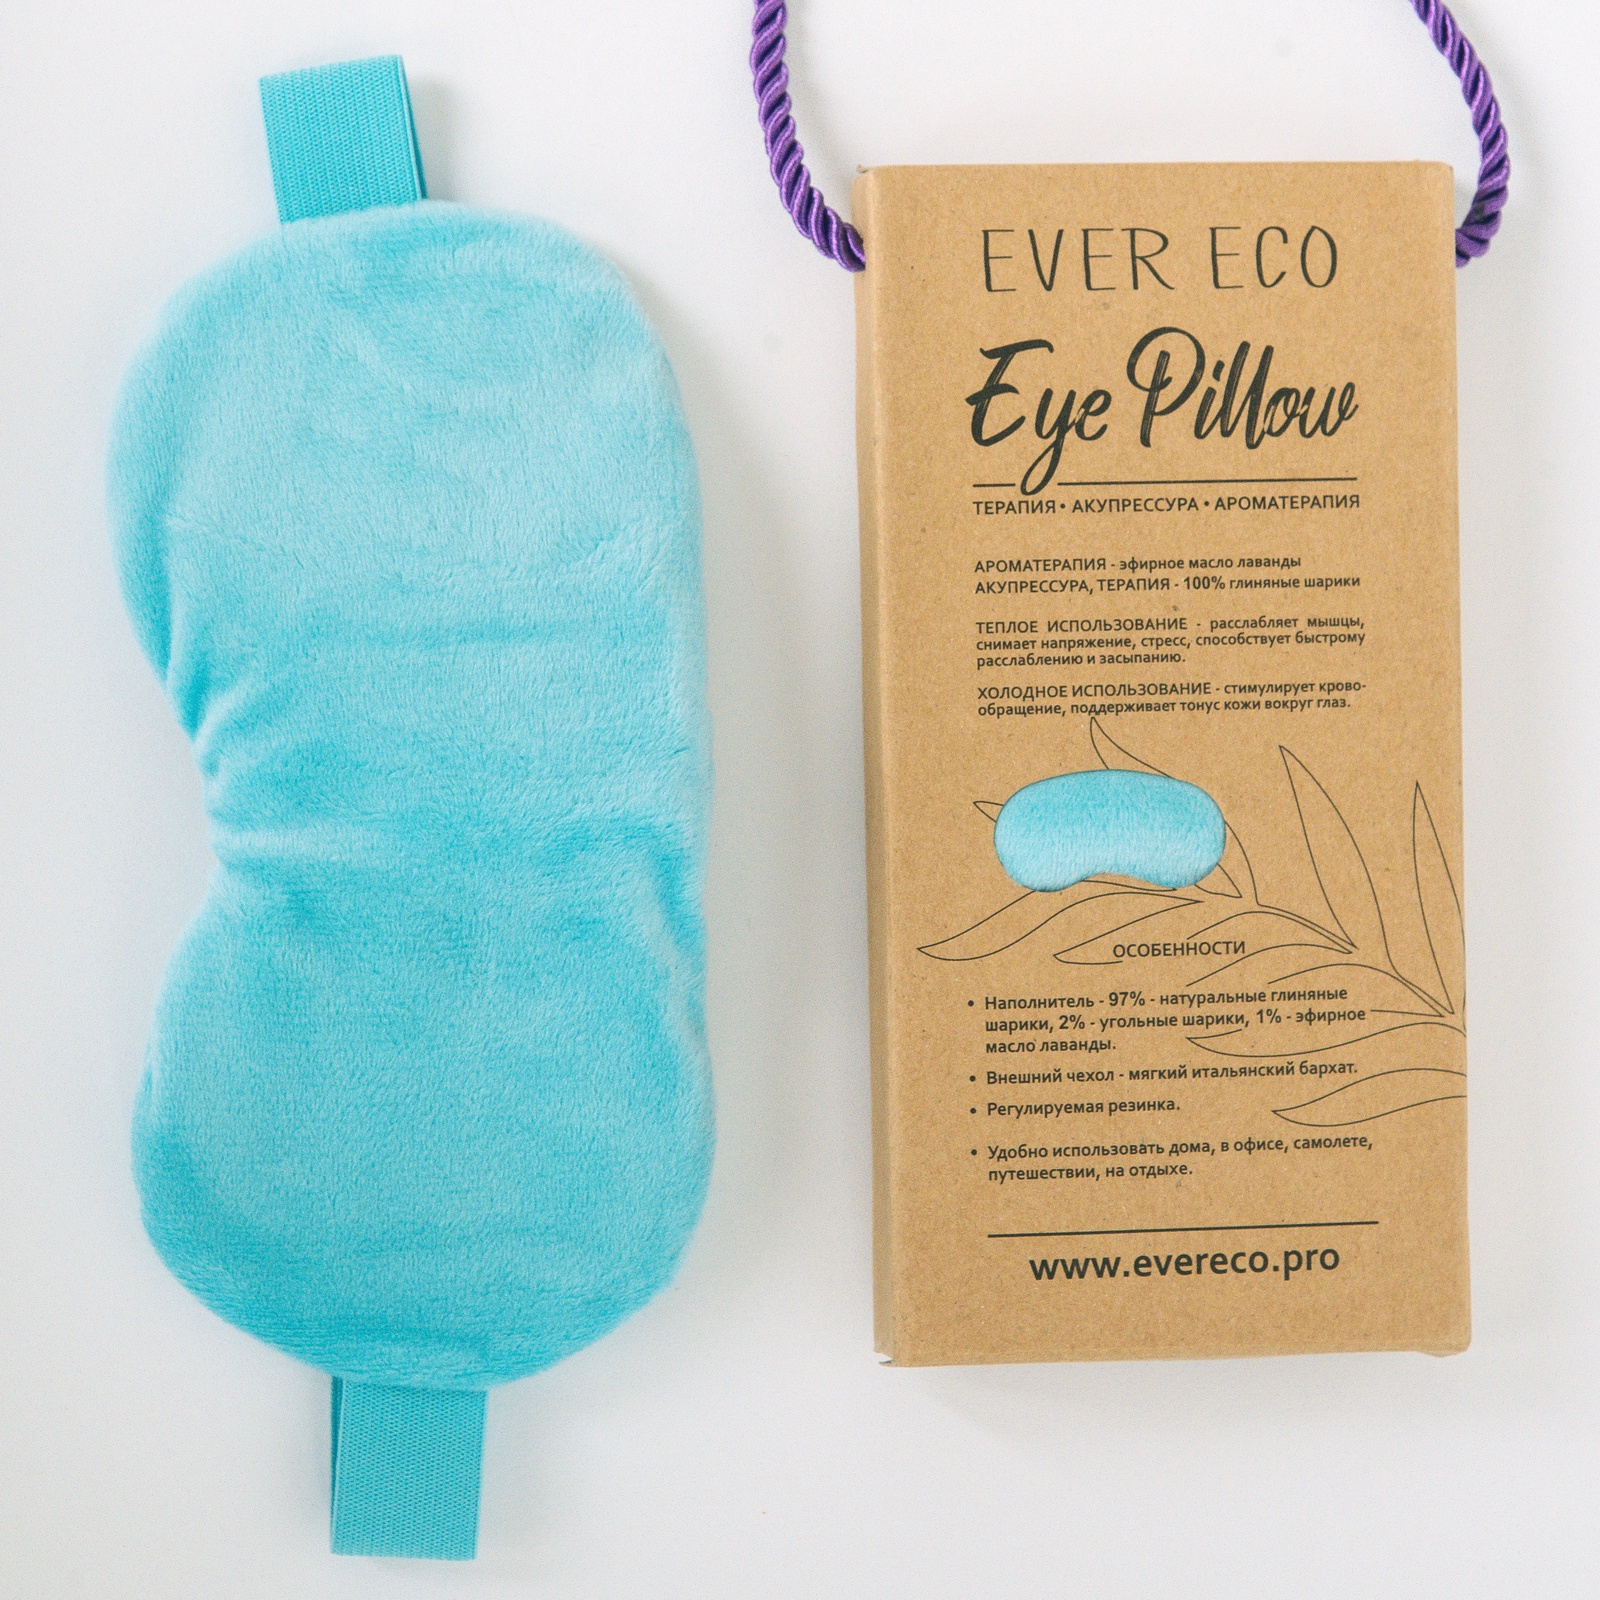 фото SPA-Маска для глаз Ever Eco, паровая маска для глаз, маска для глаз теплого и холодного использования, голубая